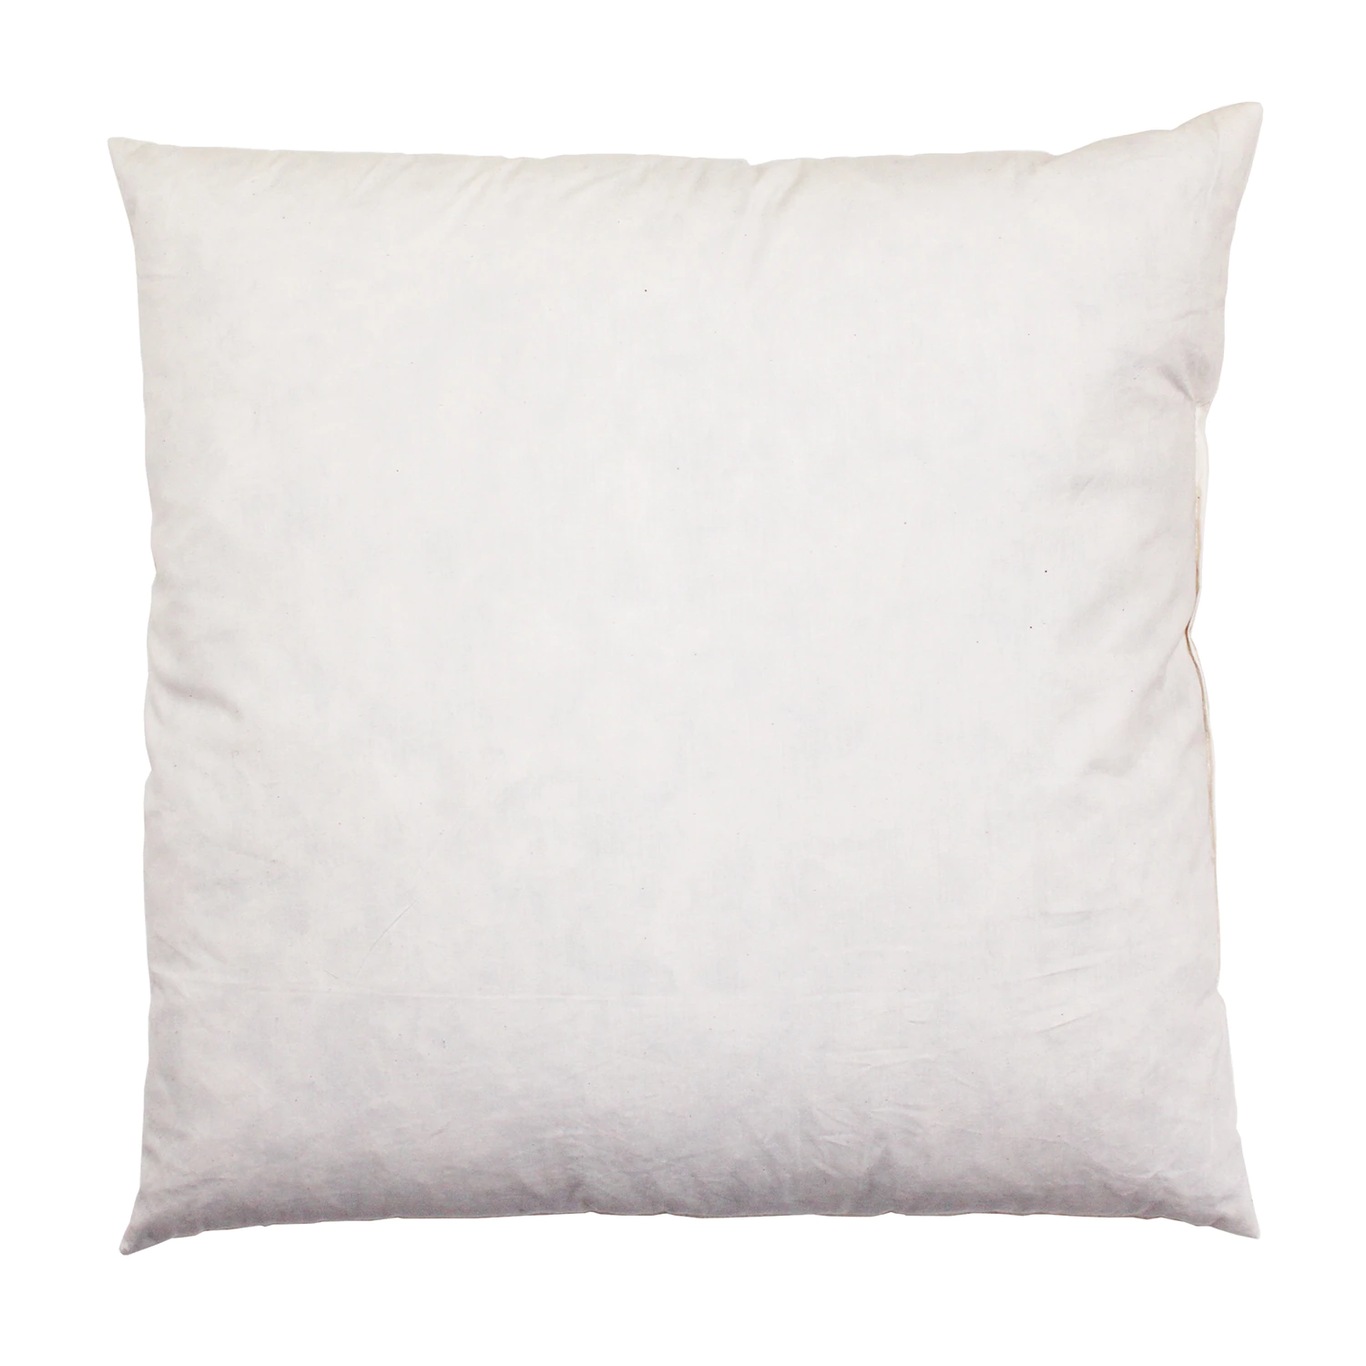 Inner pillow 65x65 cm 1500g